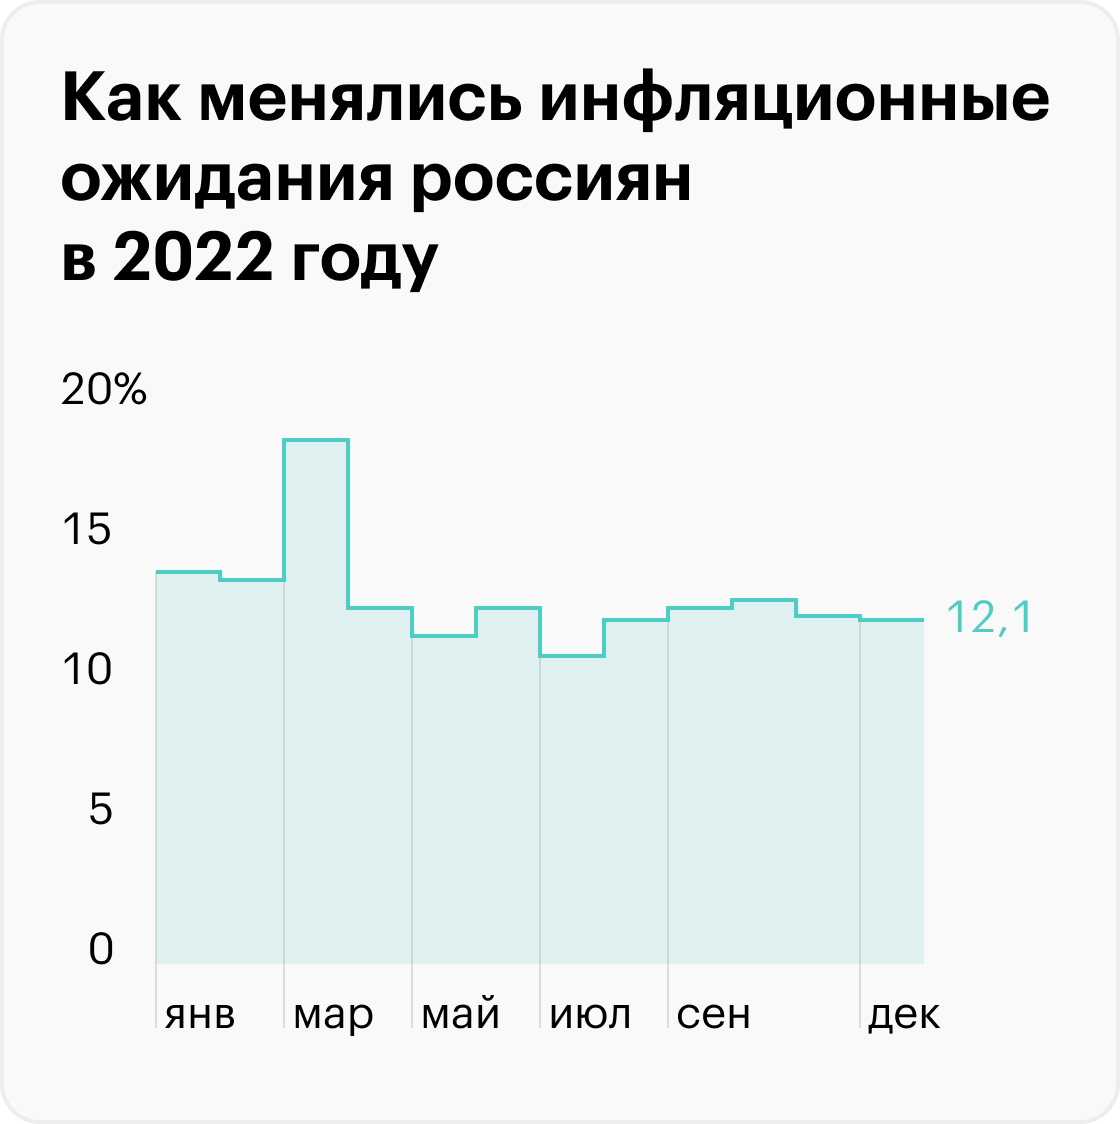 После того как в апреле курс рубля укрепился, а инфляция начала снижаться, люди поверили, что худшее позади, и перестали ждать бурного роста цен. Источник: ЦБ РФ